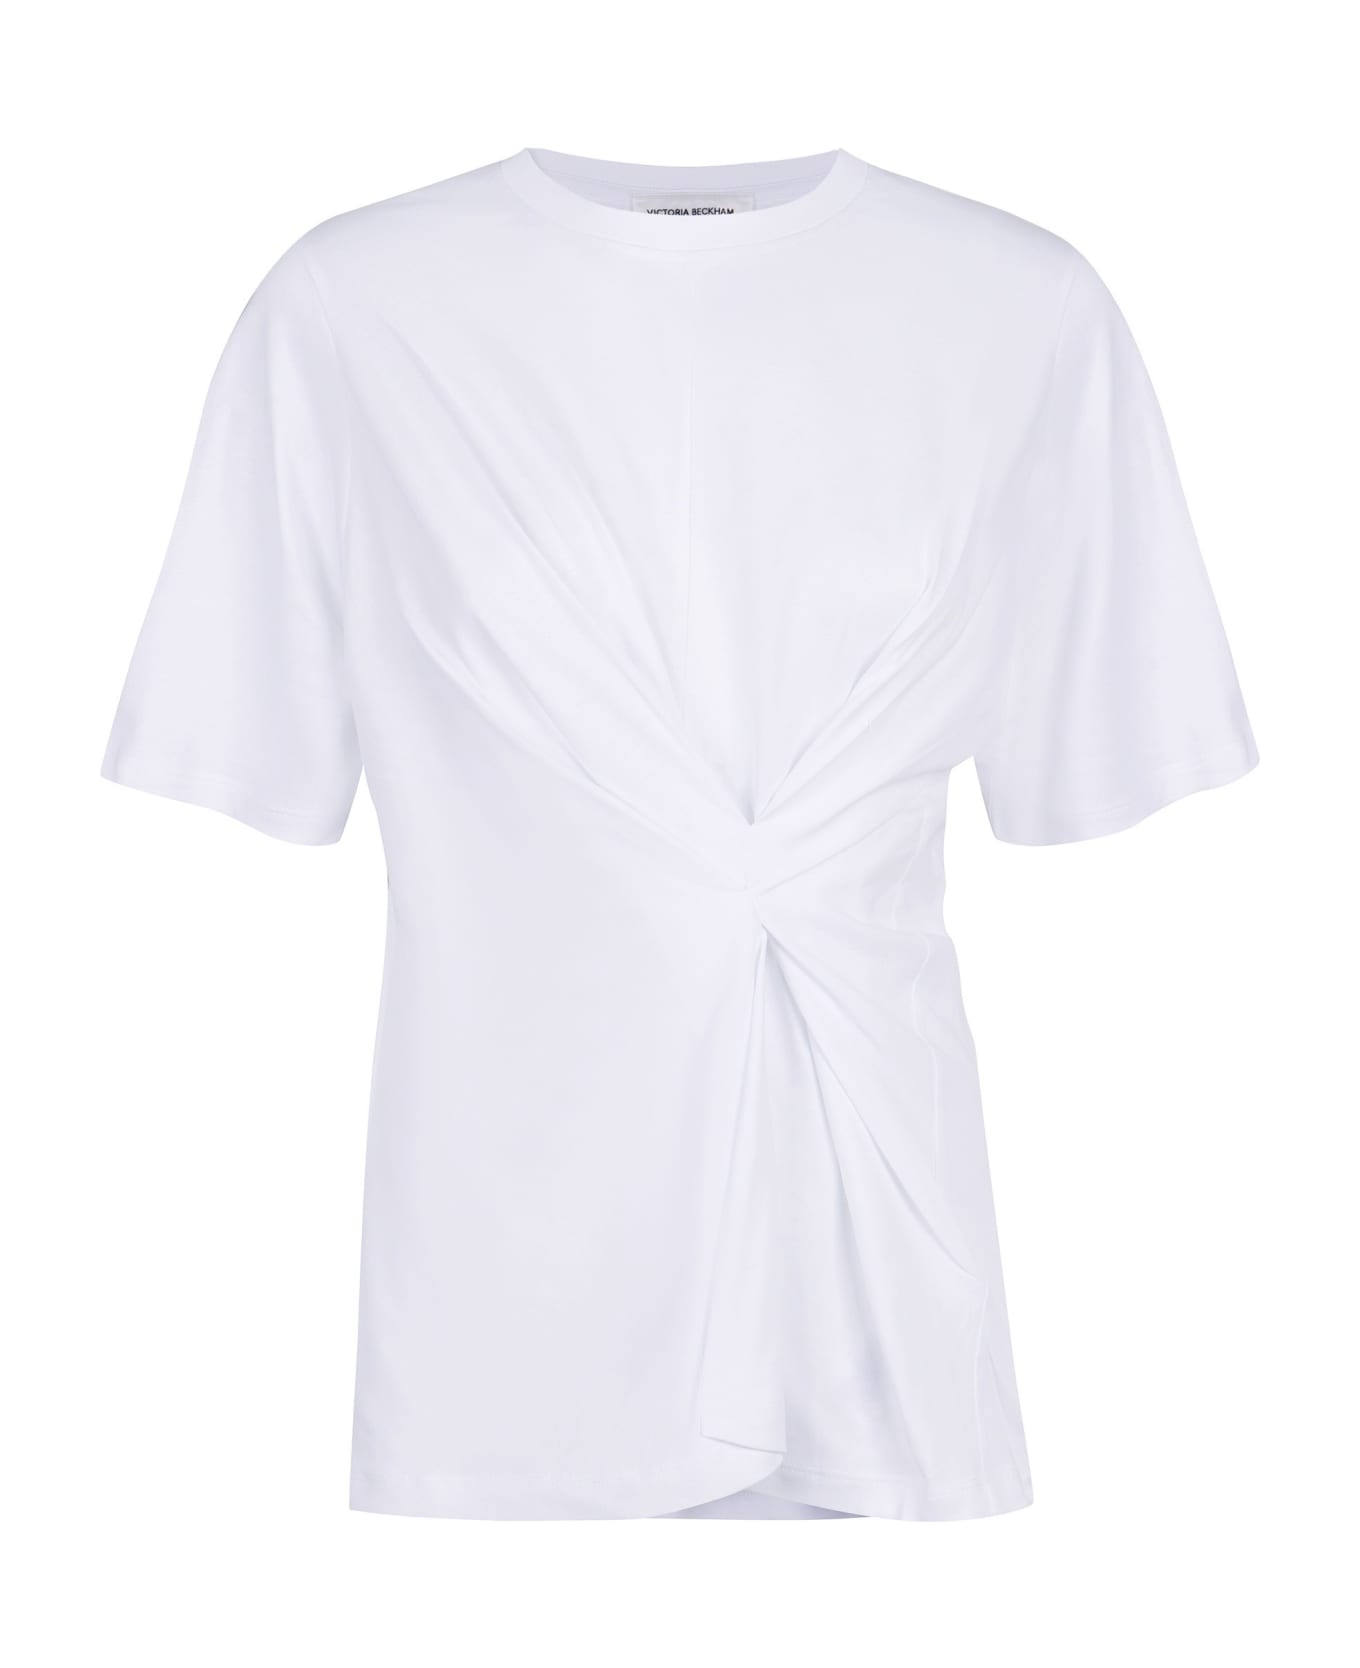 Victoria Beckham Cotton T-shirt - White Tシャツ